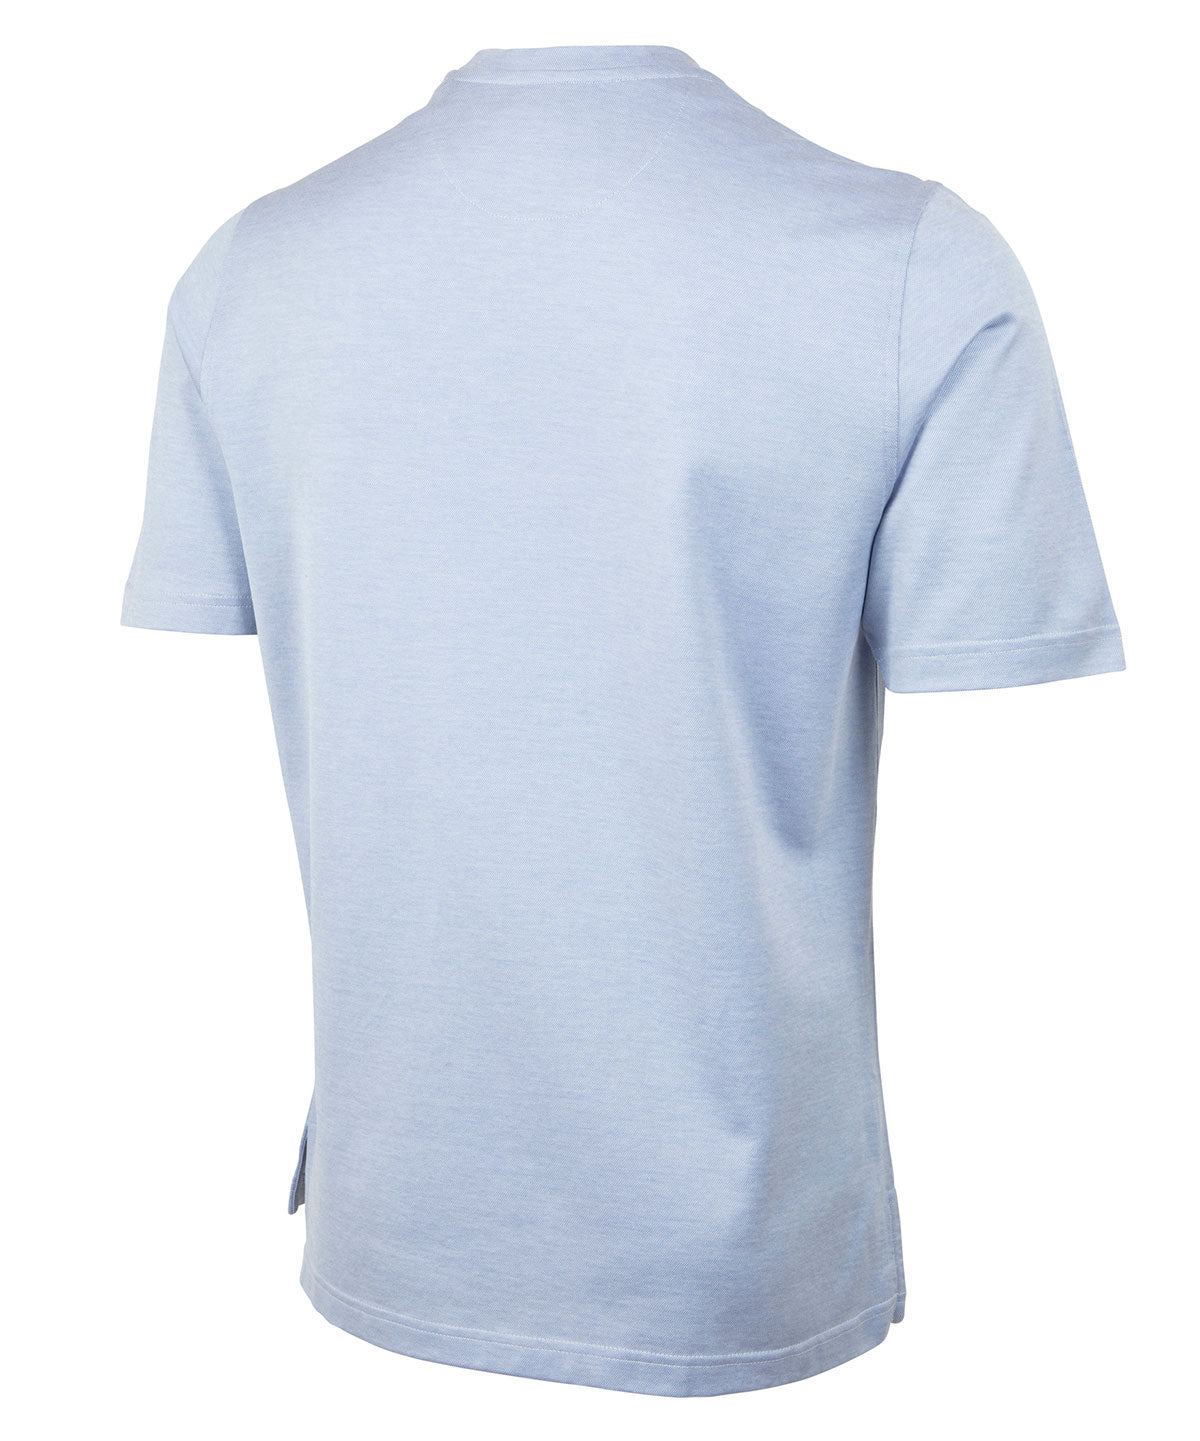 Signature Cotton Knit Short-Sleeve Cabana Tee Shirt